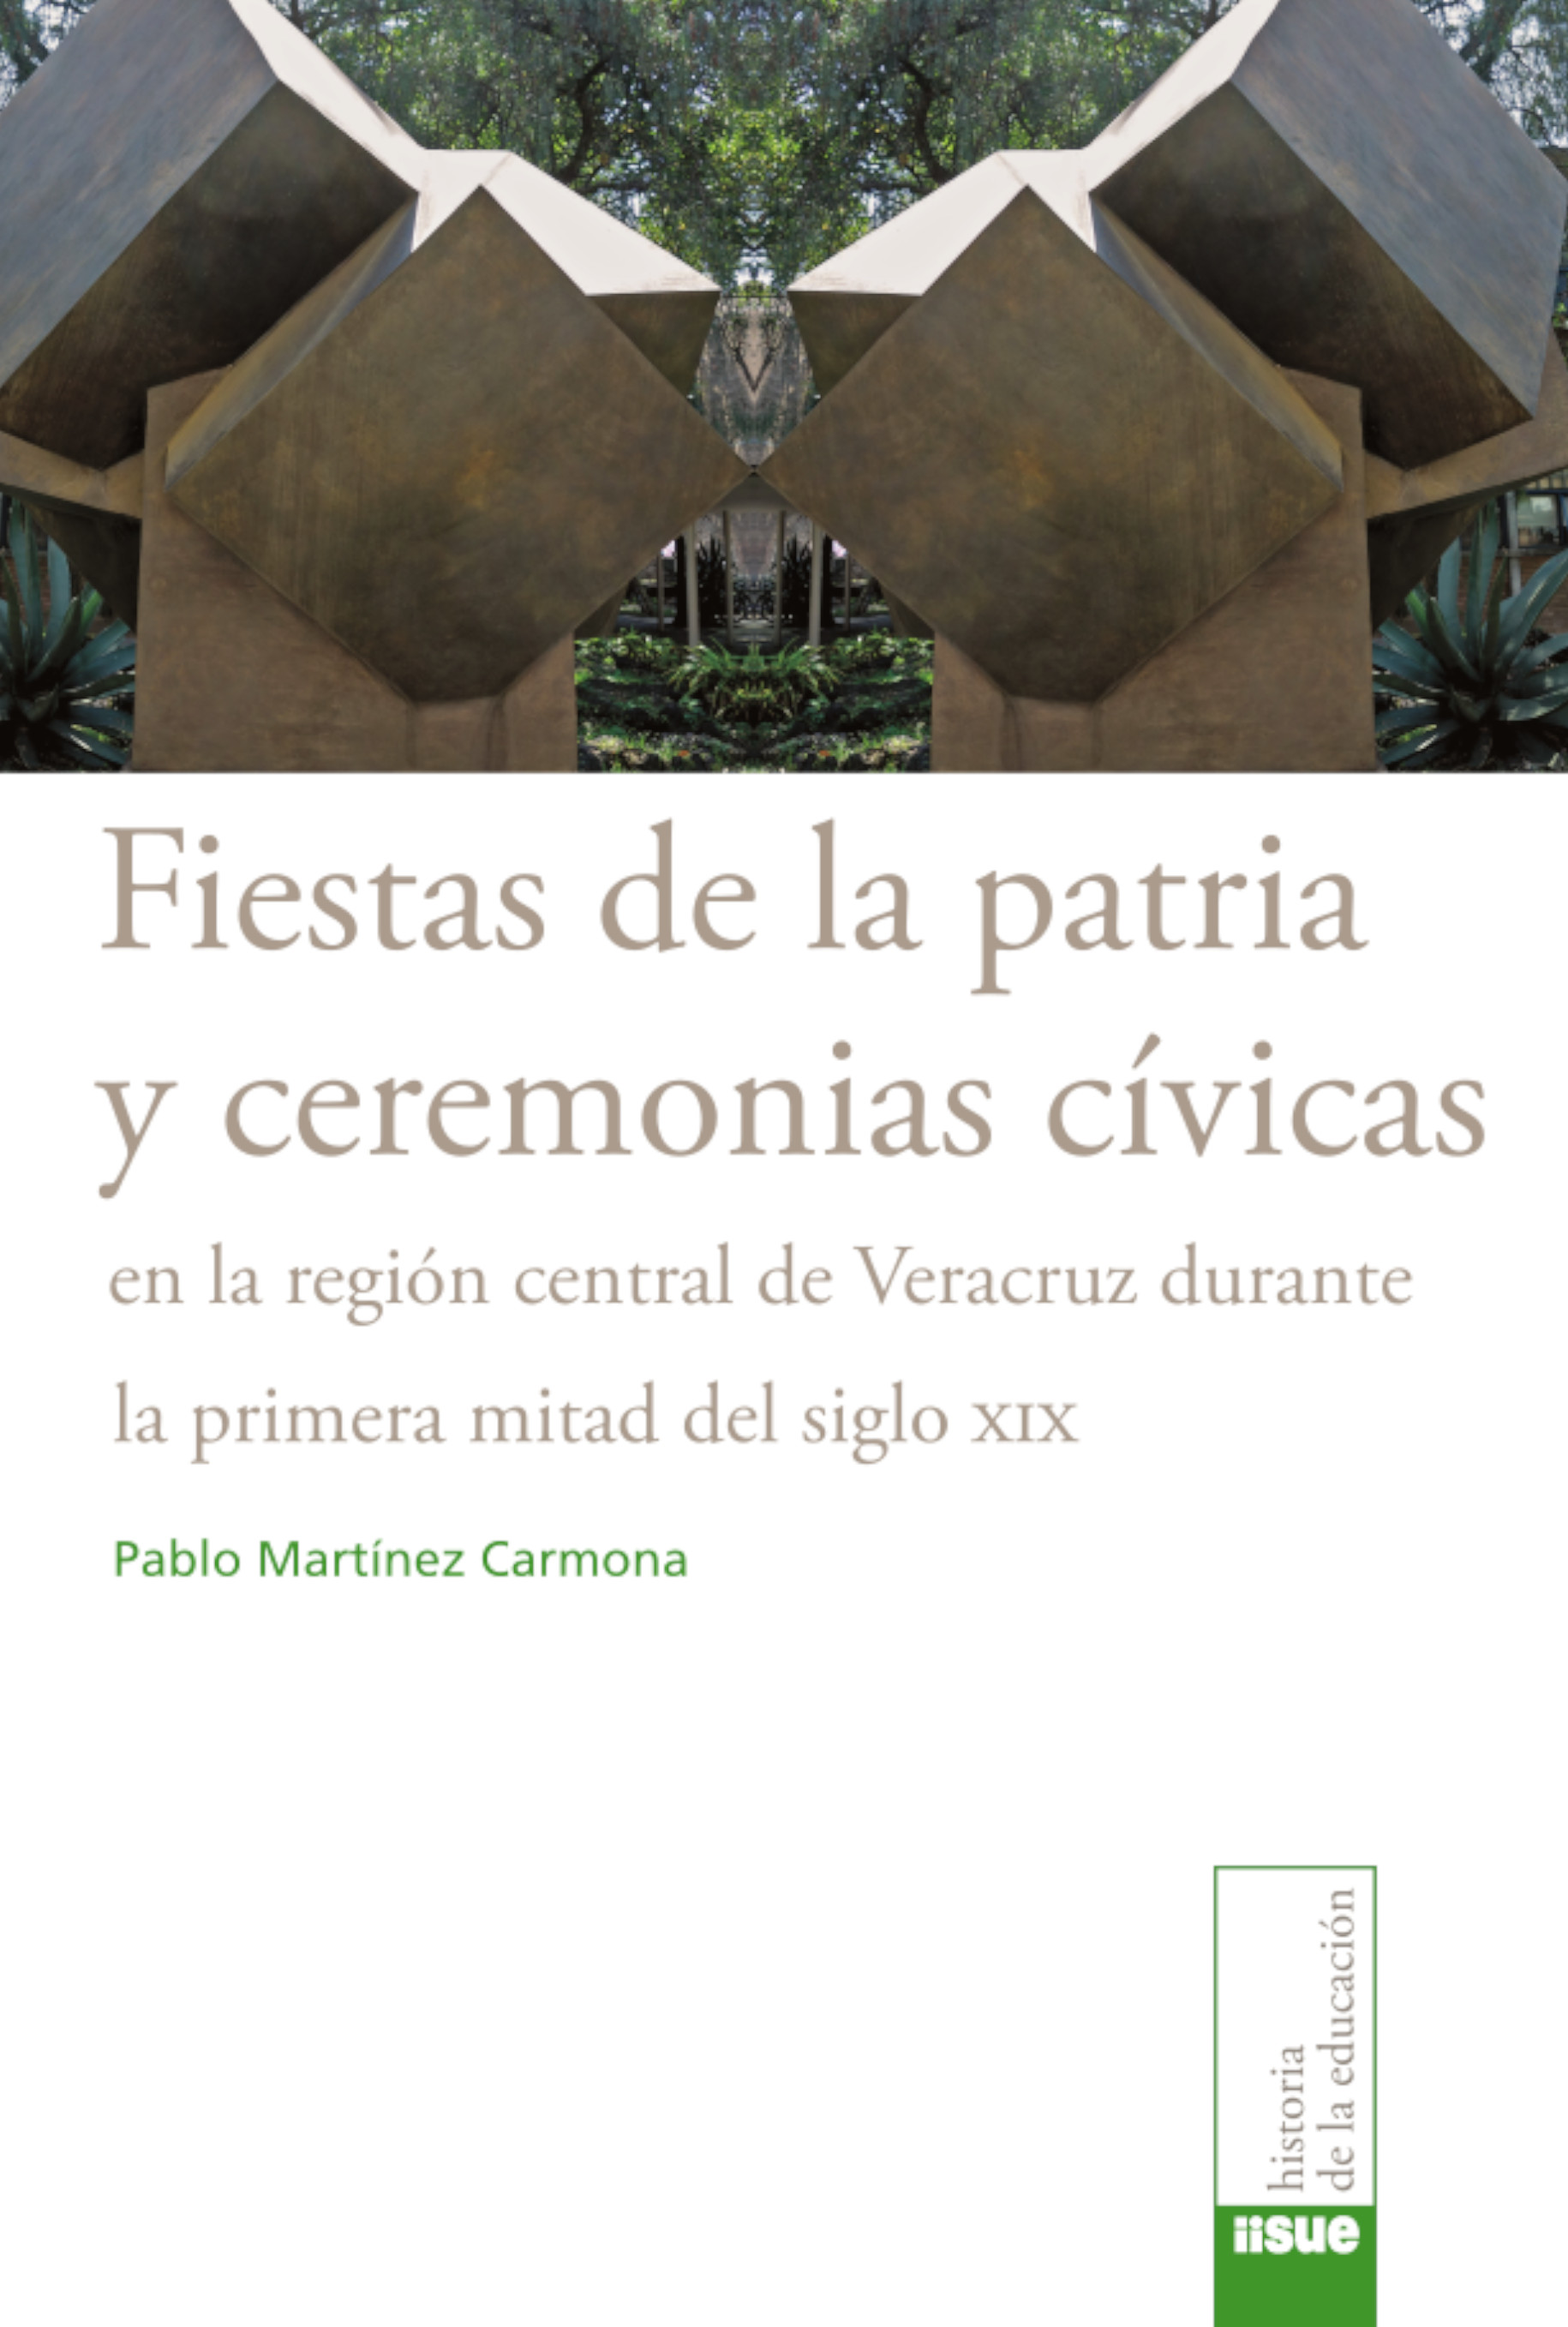 Fiestas de la patria y ceremonias cívicas en la región central de Veracruz durante la primera mitad del siglo XIX